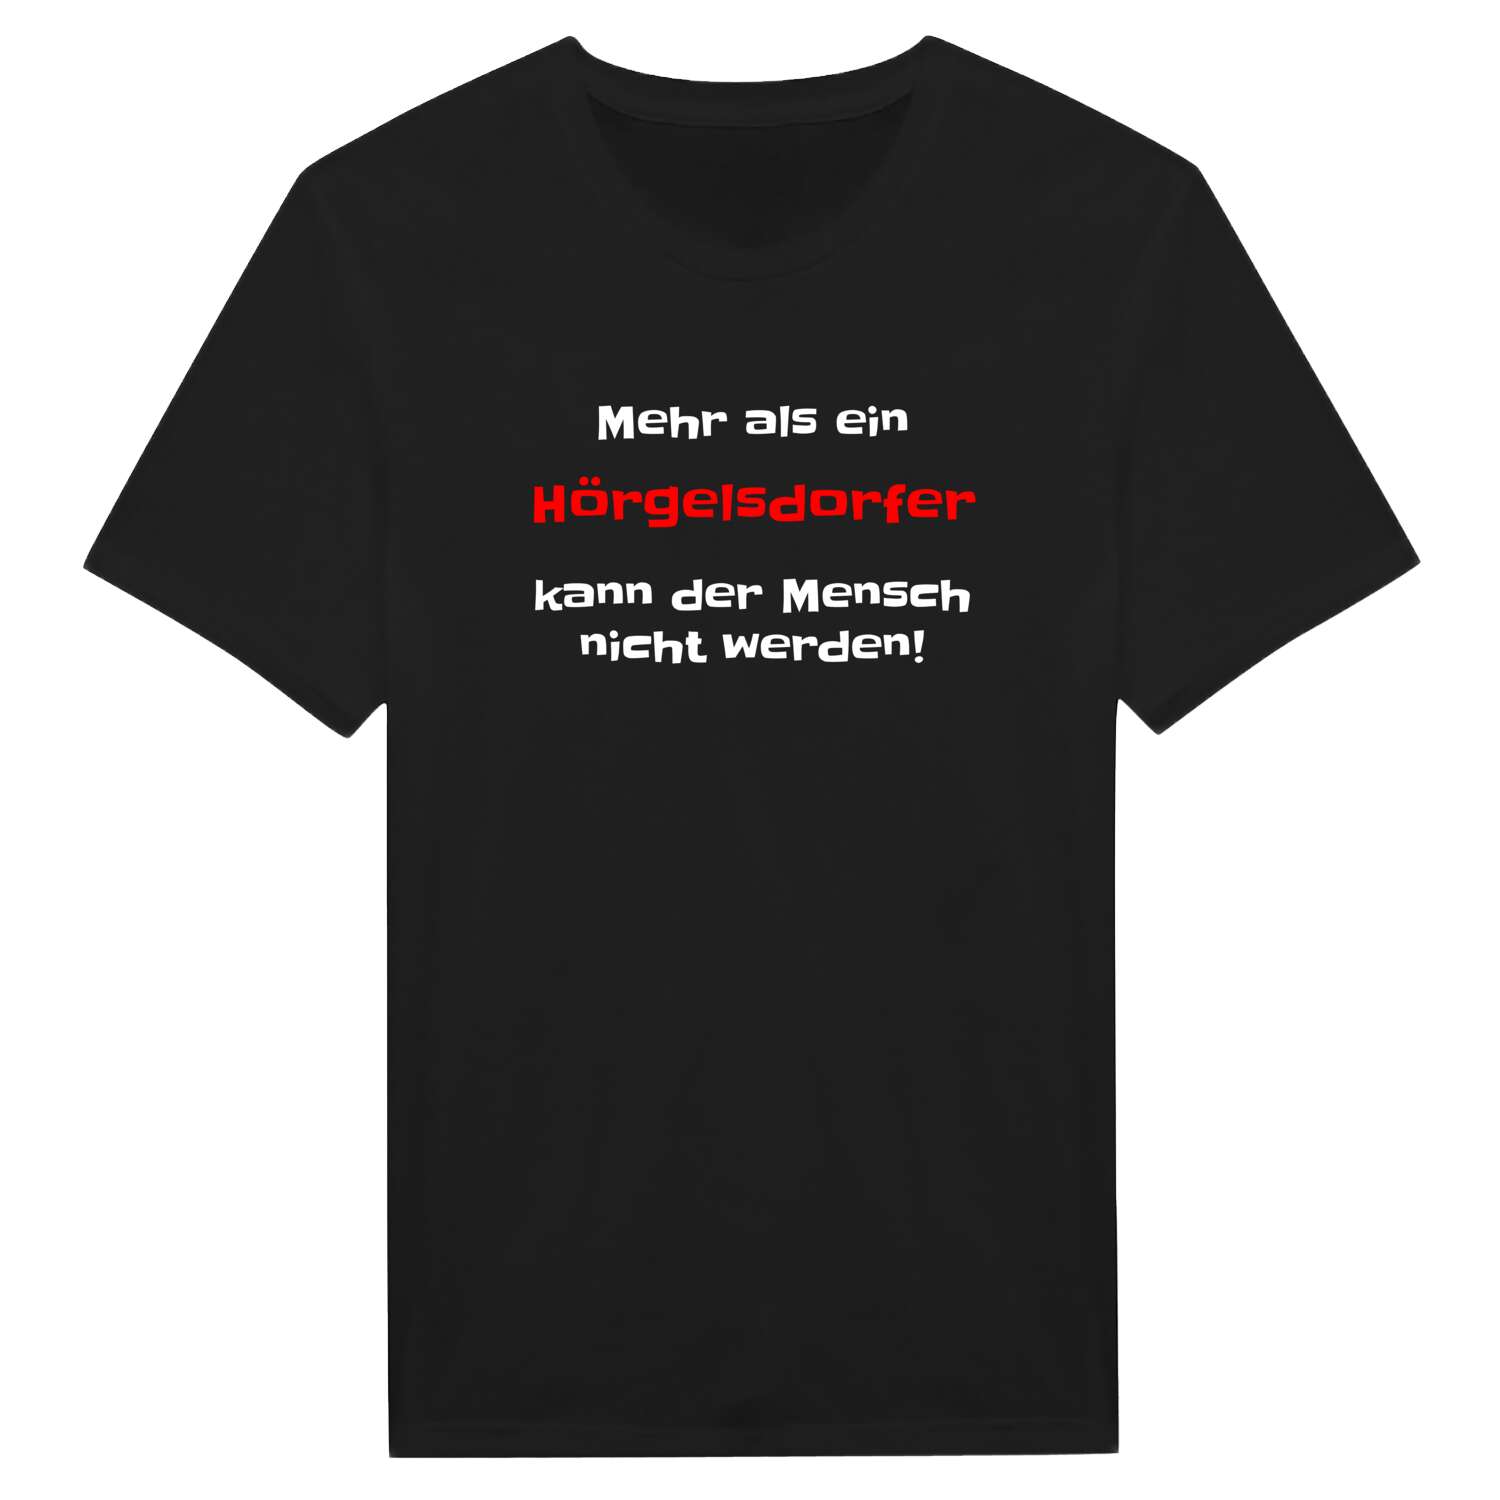 Hörgelsdorf T-Shirt »Mehr als ein«